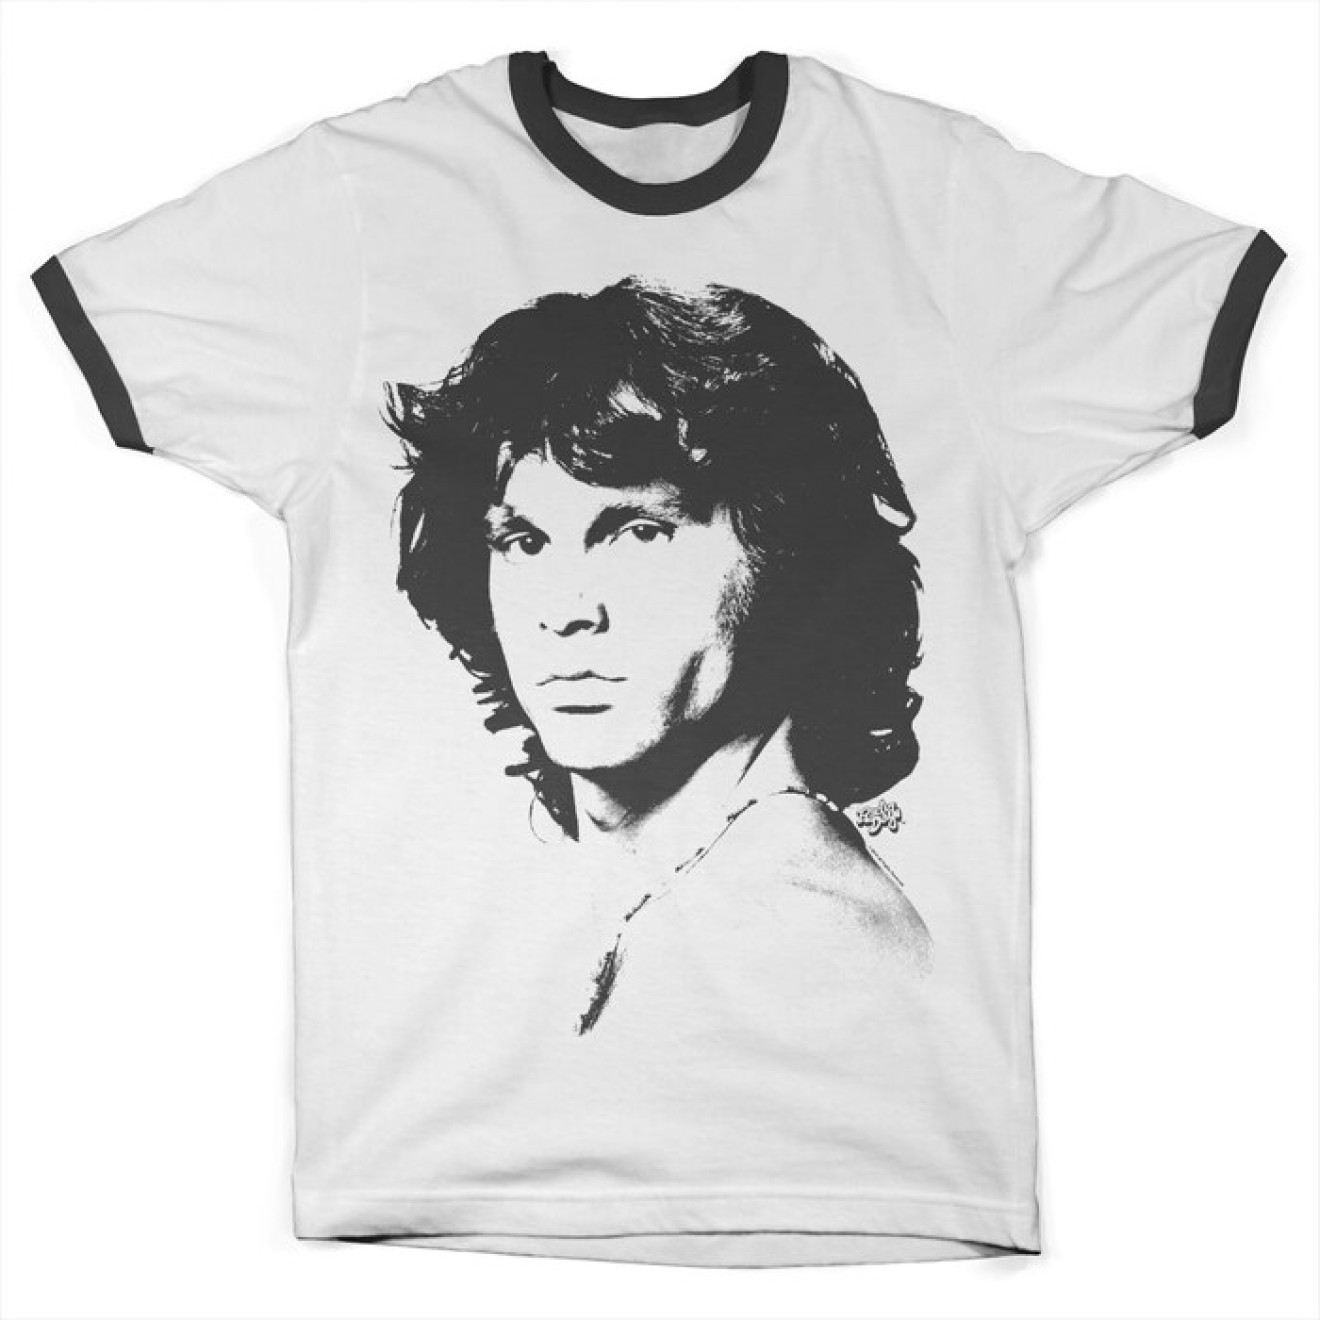 Jim Morrison Portrait Ringer Tee